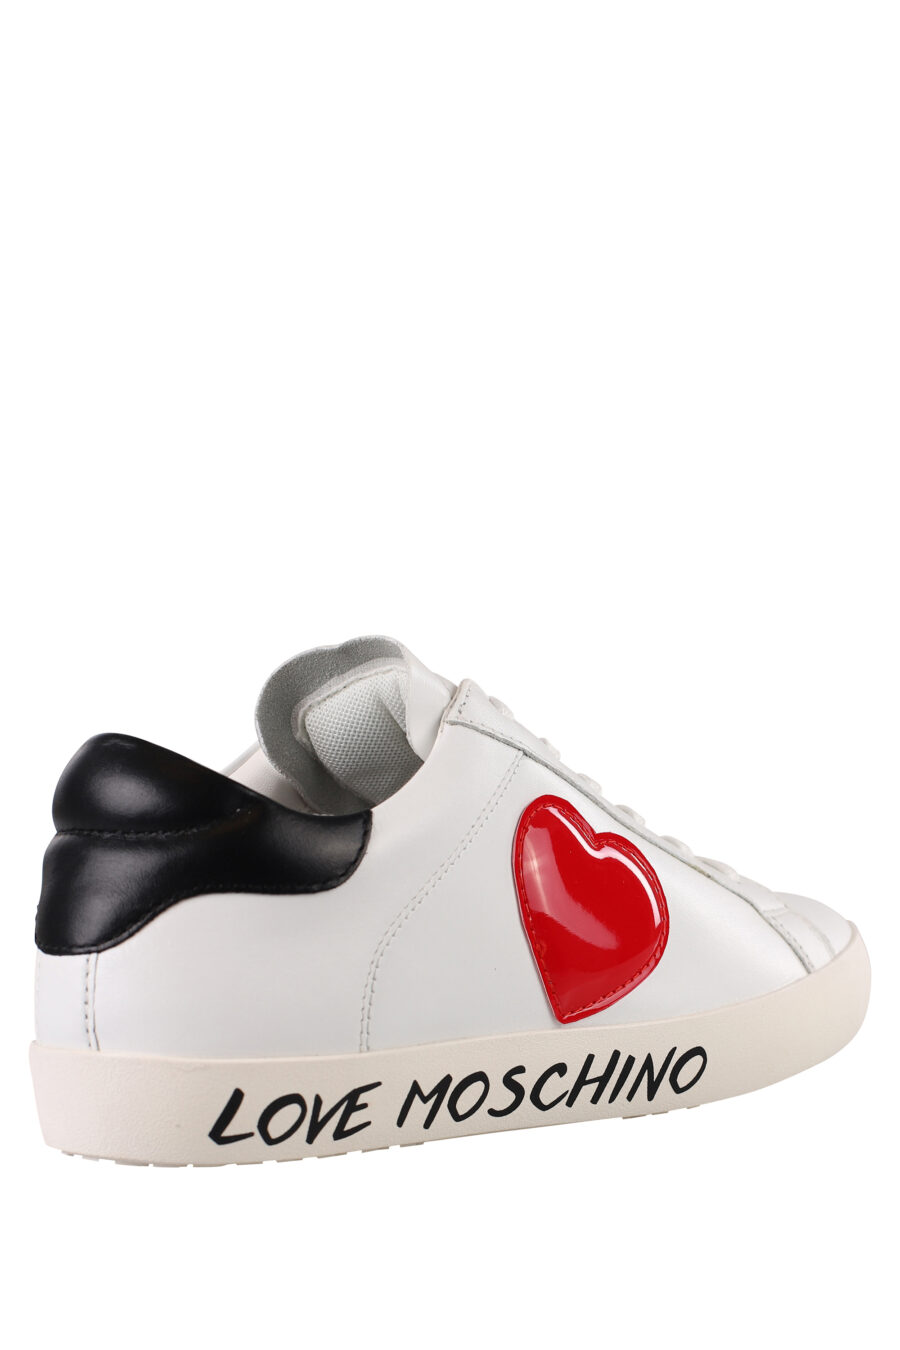 Zapatillas blancas con corazón rojo lateral y logo en suela - IMG 1207